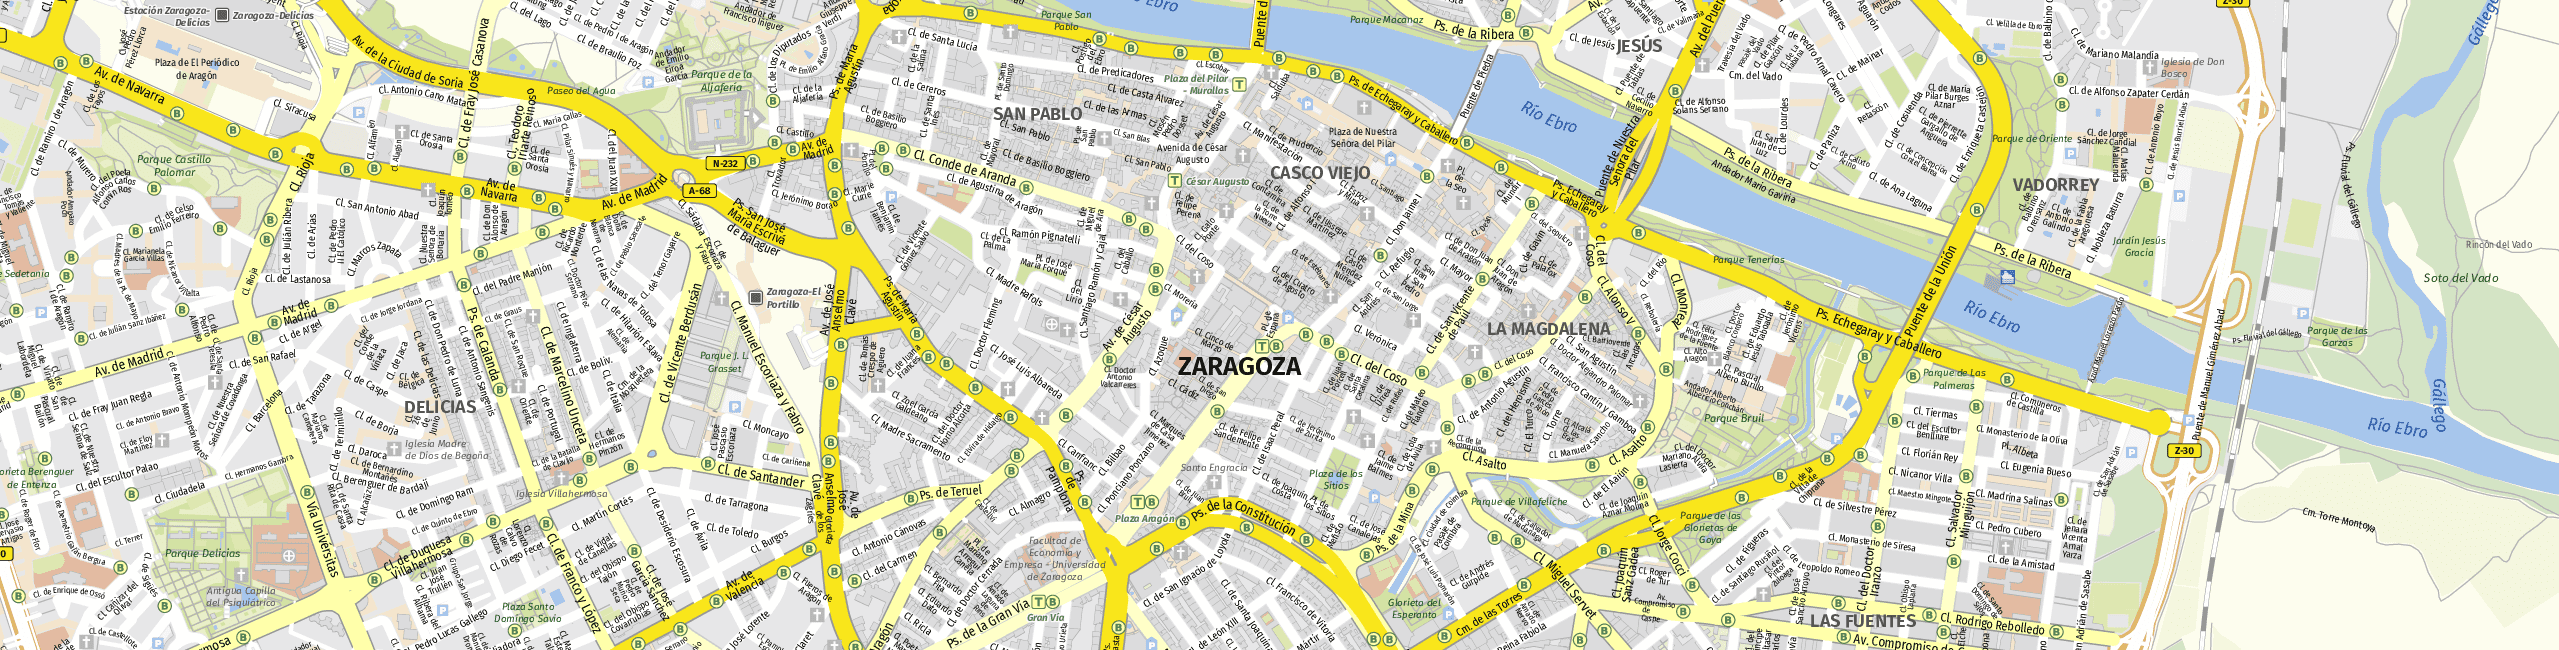 Stadtplan Zaragoza zum Downloaden.